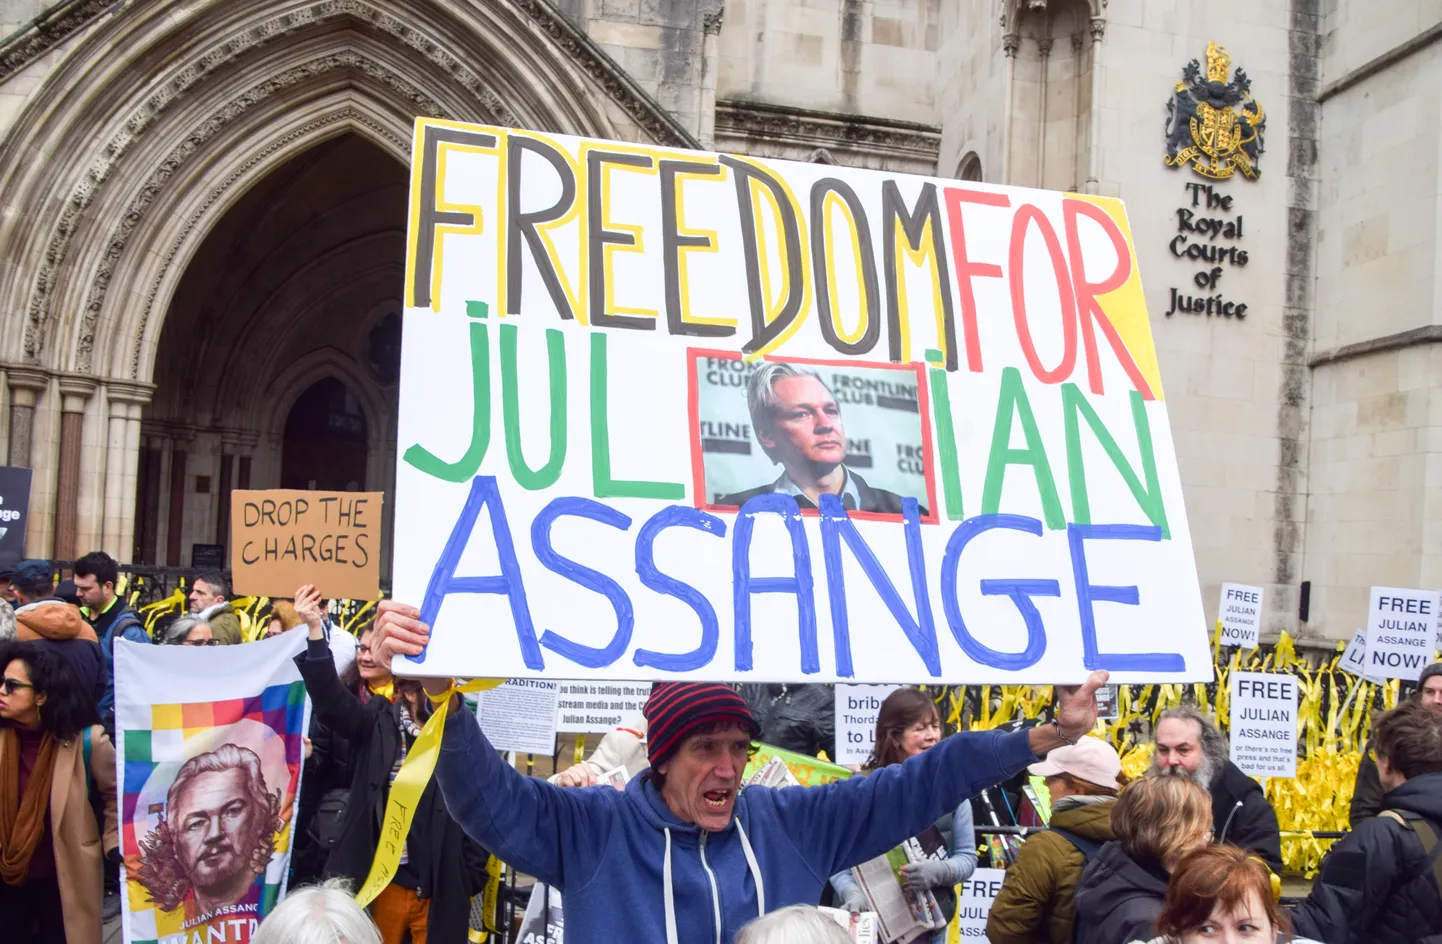 WikiLeaksi asutaja Julian Assange'i toetajad protestimas Londoni kohtuhoone ees.